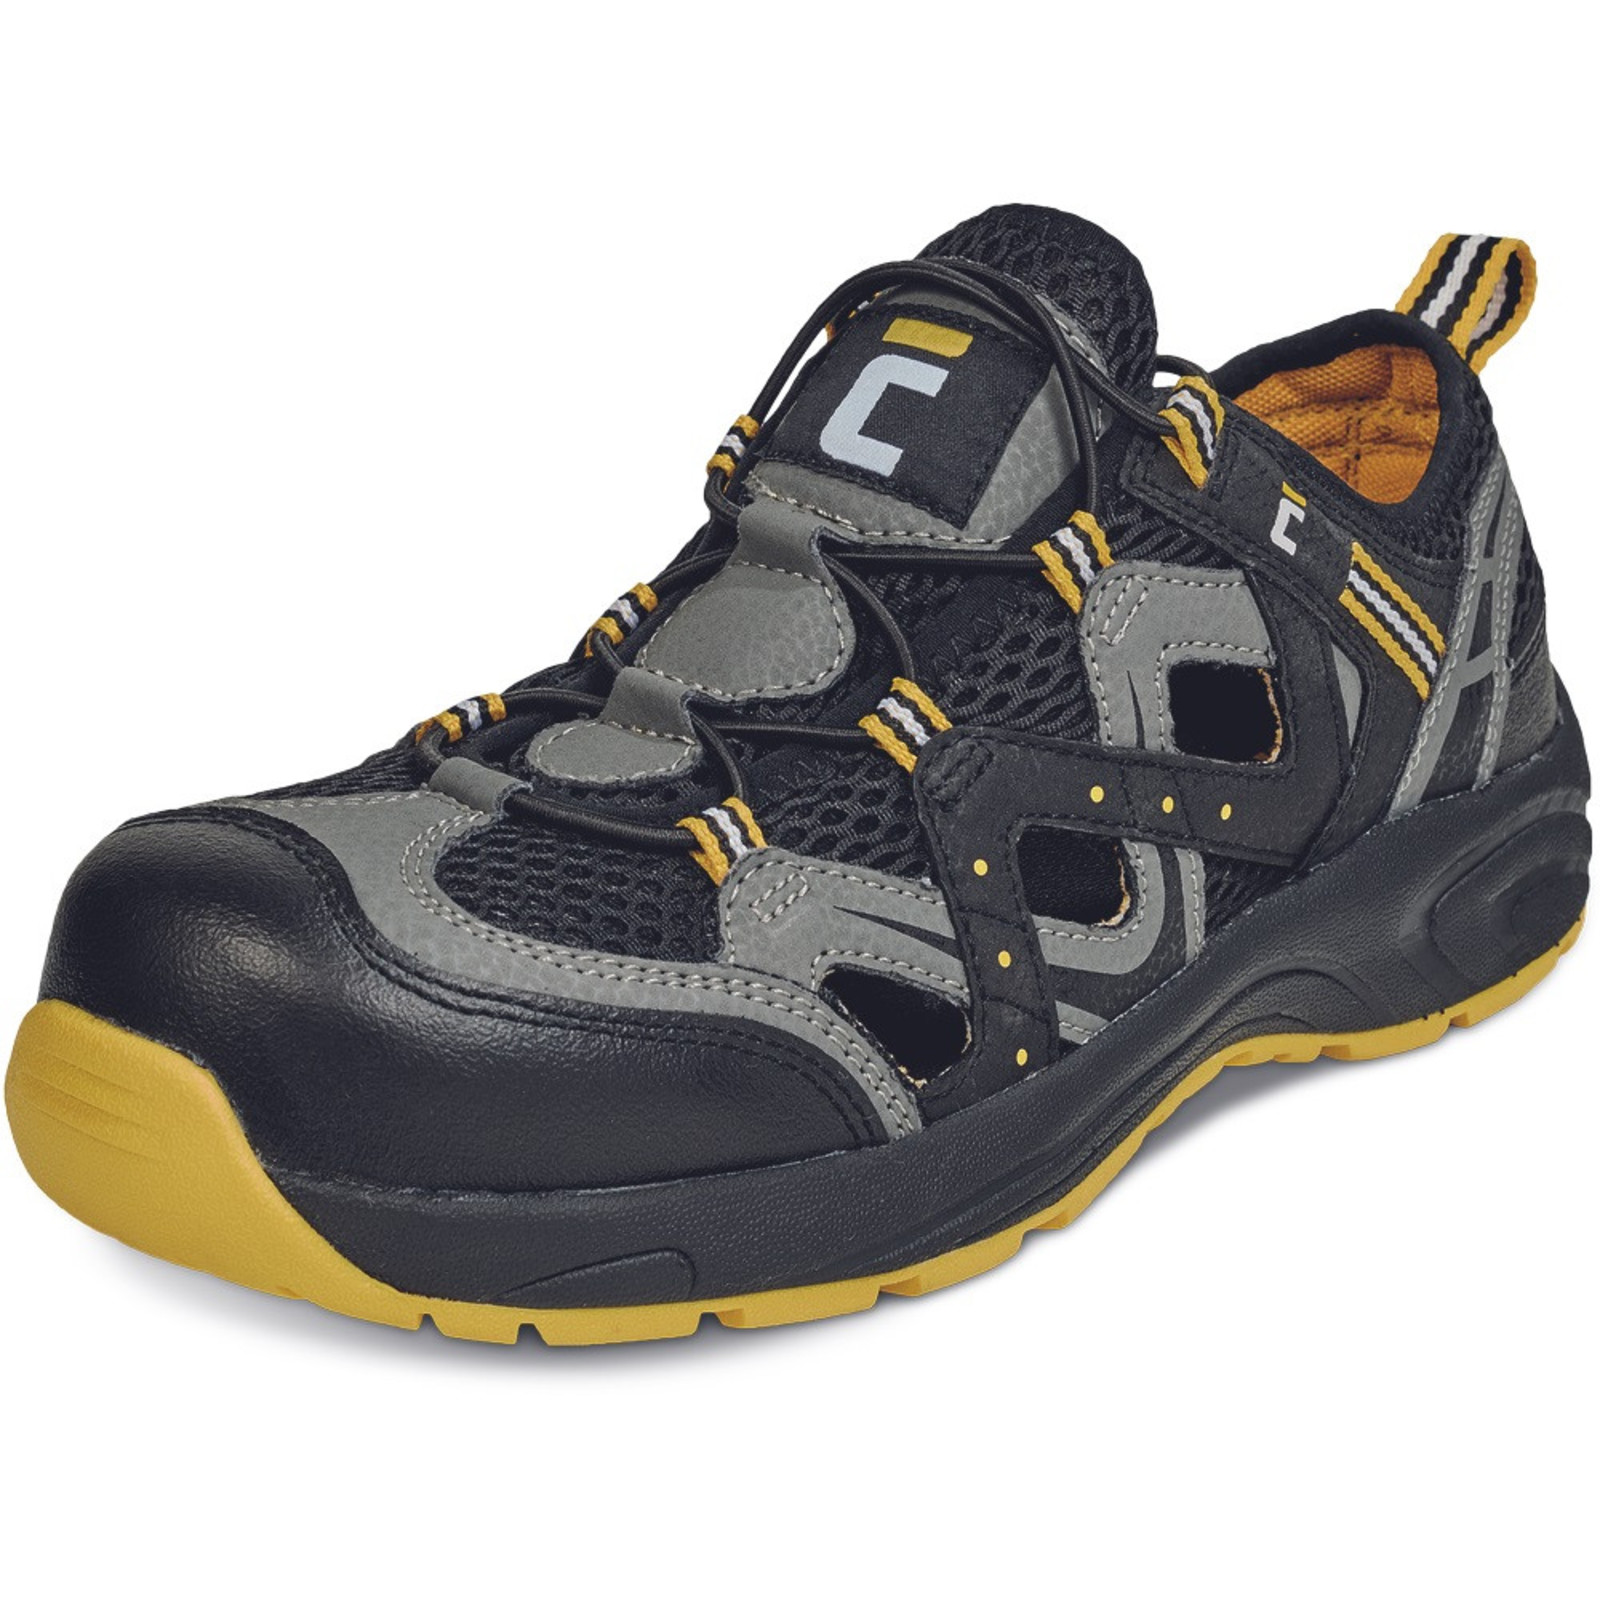 Pracovné sandále Cerva Henford O1 SRC - veľkosť: 42, farba: čierna/žltá